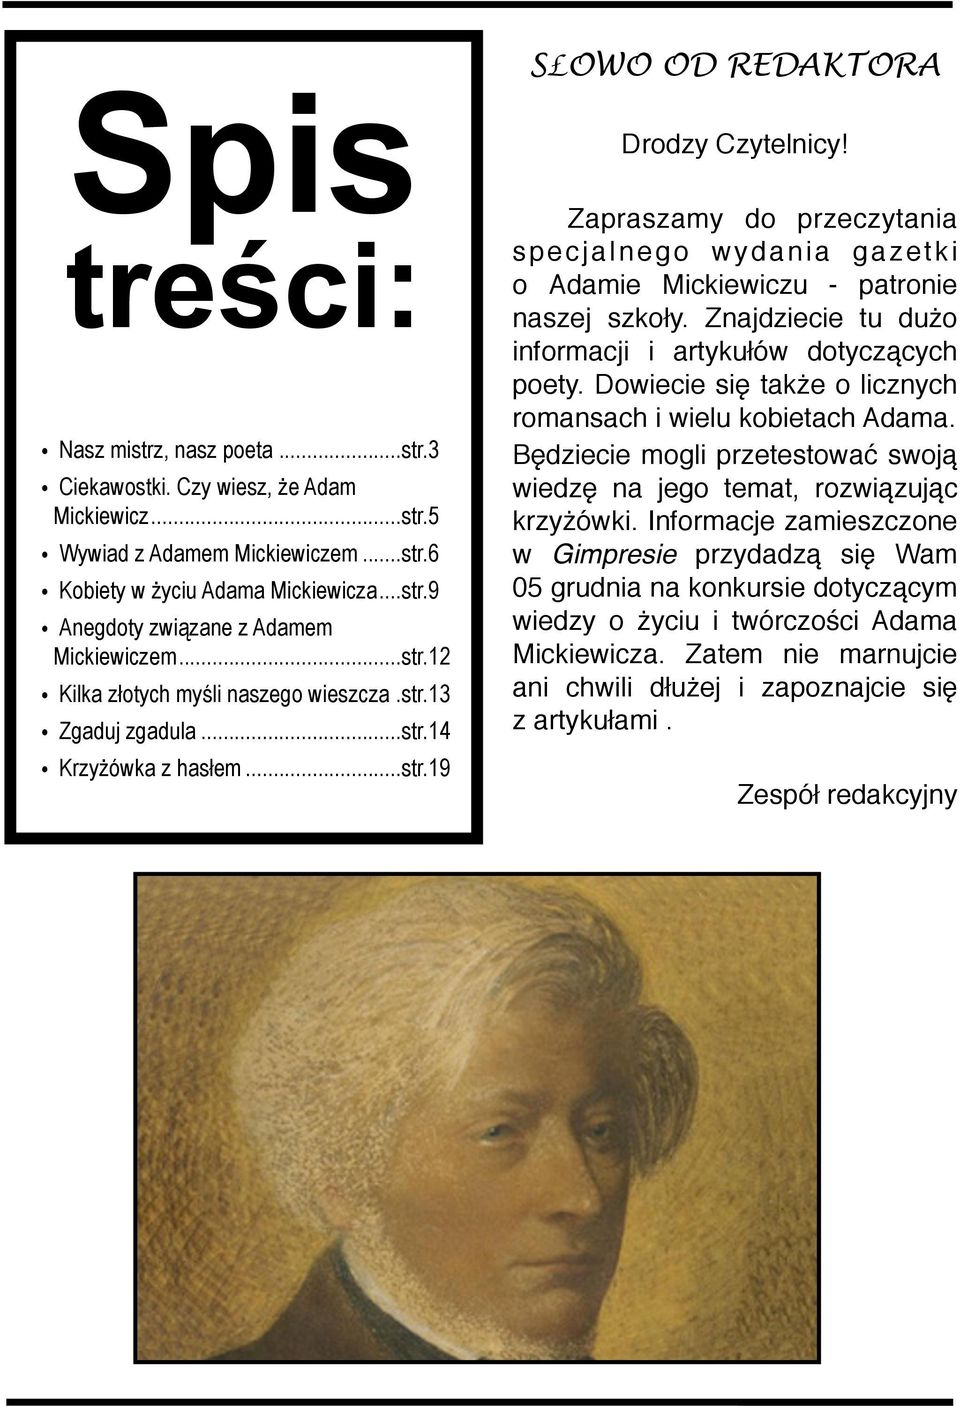 ! Zapraszamy do przeczytania specjalnego wydania gazetki o Adamie Mickiewiczu - patronie naszej szkoły. Znajdziecie tu dużo informacji i artykułów dotyczących poety.